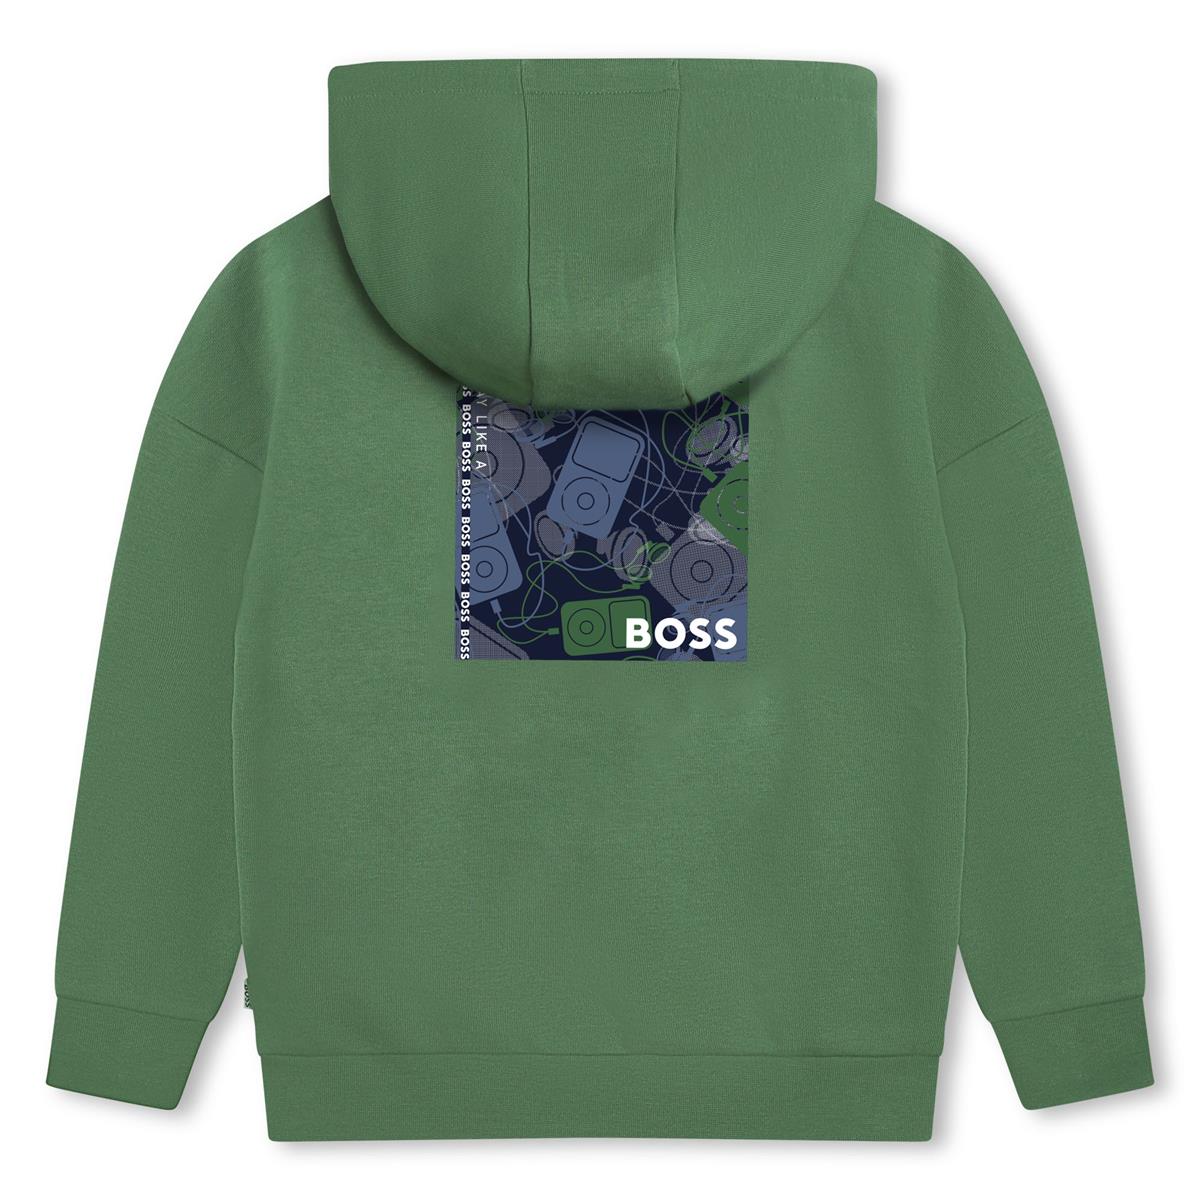 Boys Green Hooded Sweatshirt